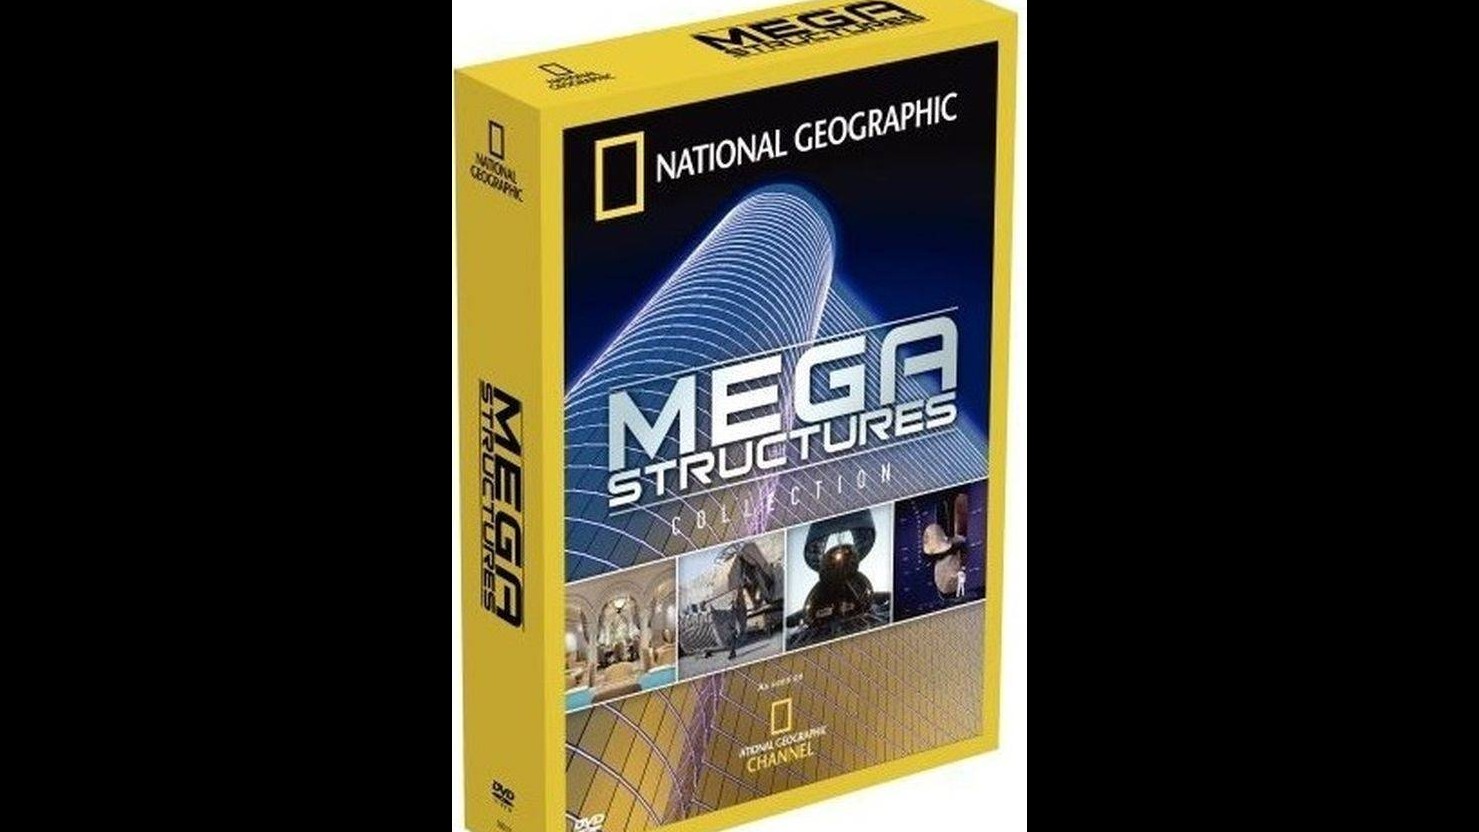  国家地理频道《伟大工程巡礼 National Geographic Megastructures》全系列共118集 英语中字 720P/工程纪录片下载